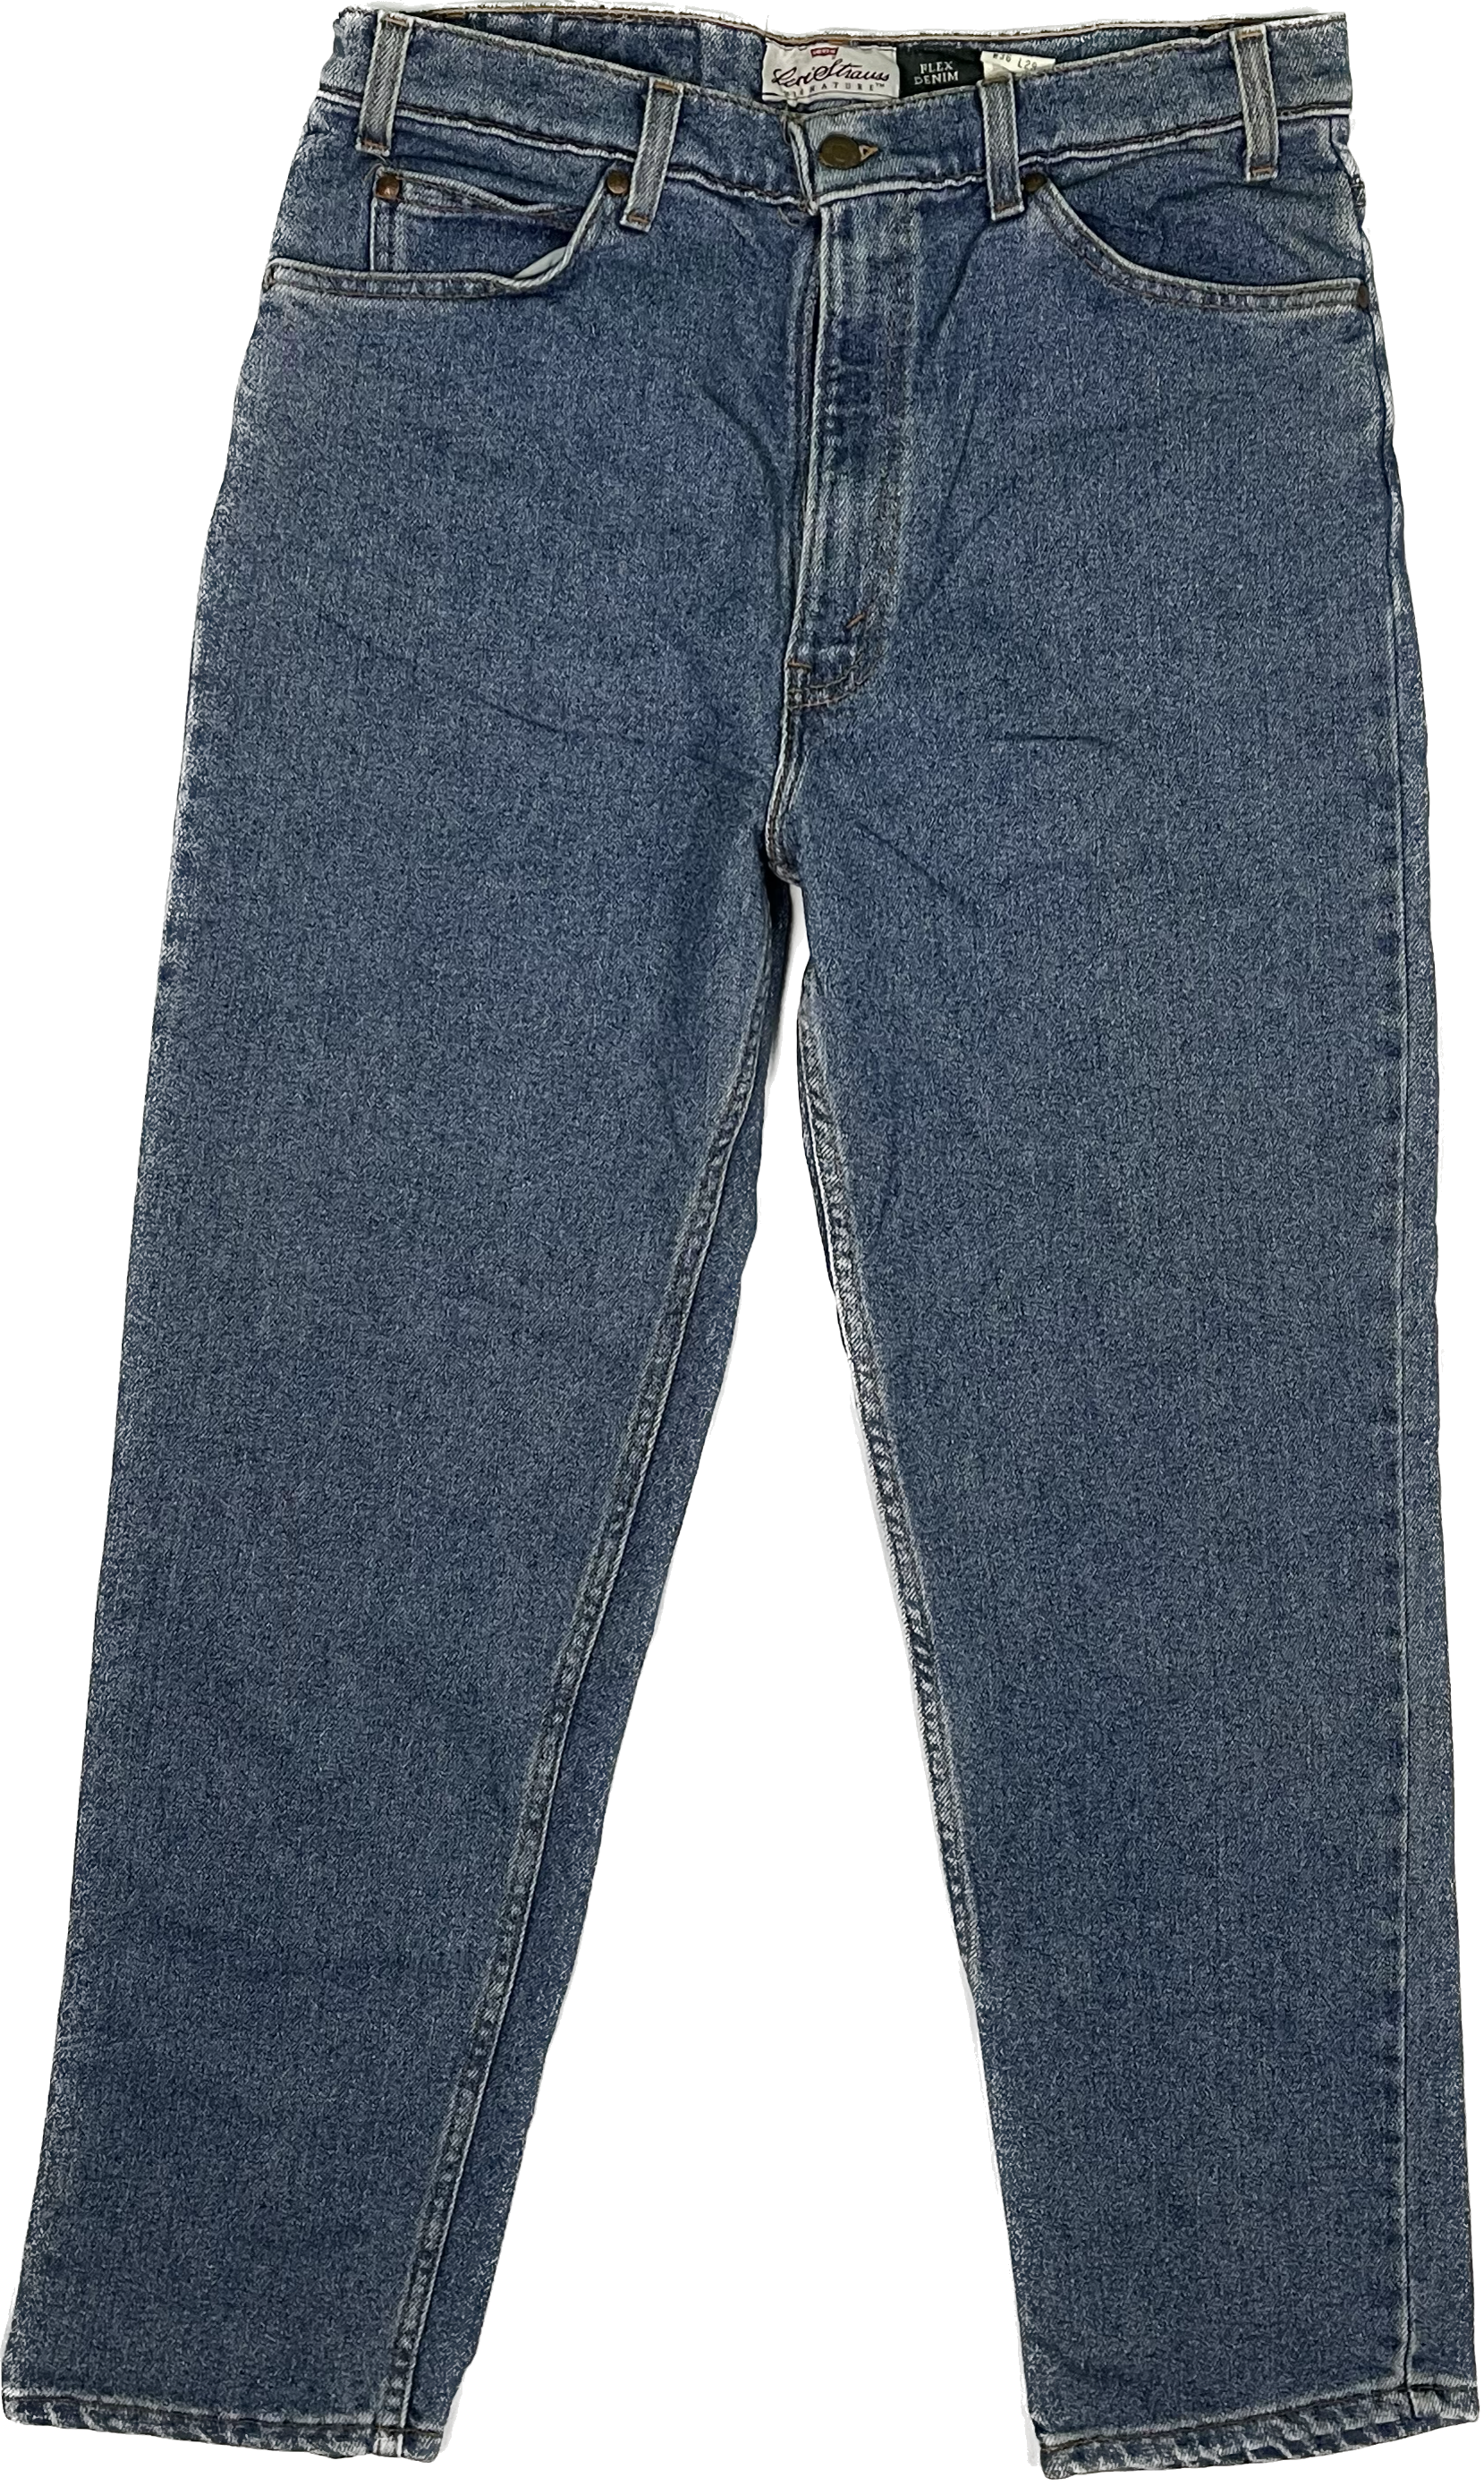 97&#39; Levi&#39;s 540 Vintage Jeans